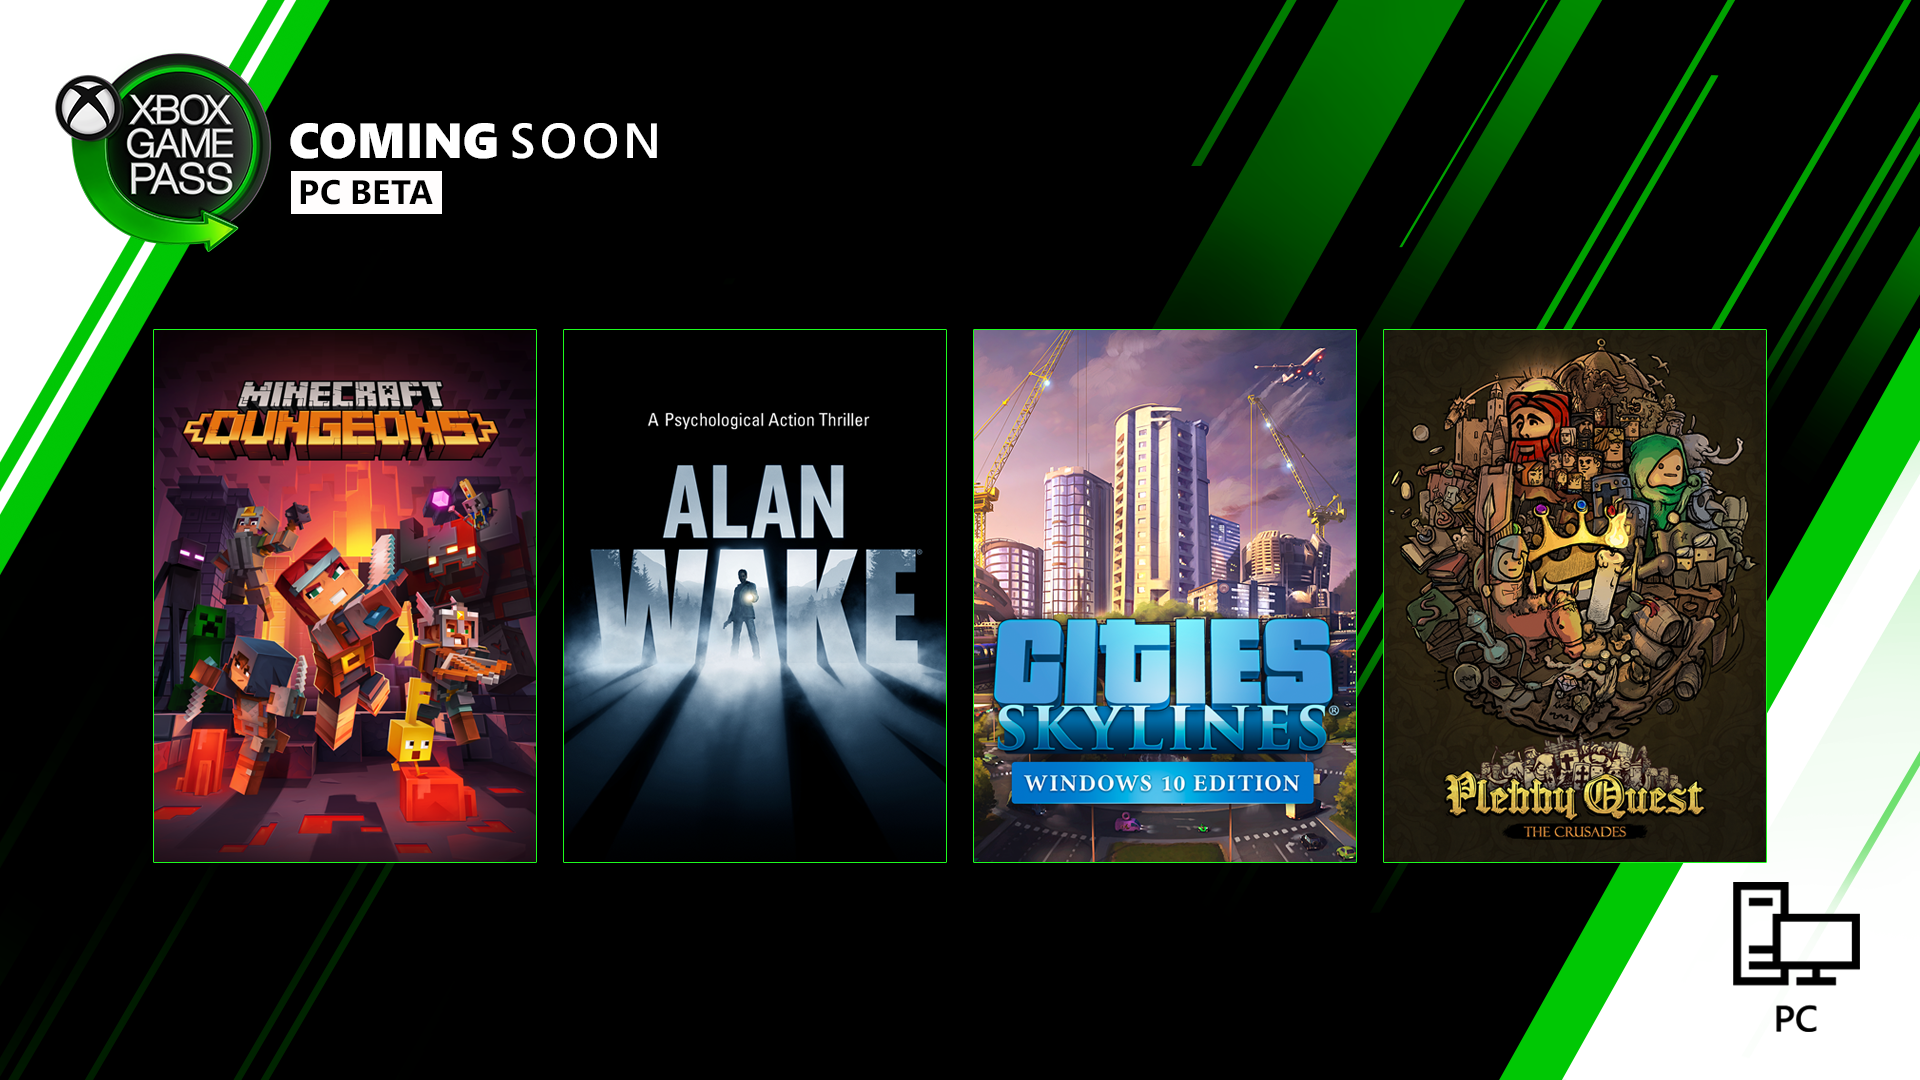 Neu im Xbox Game Pass für PC (Beta): Minecraft Dungeons, Alan Wake, Cities: Skylines und mehr!